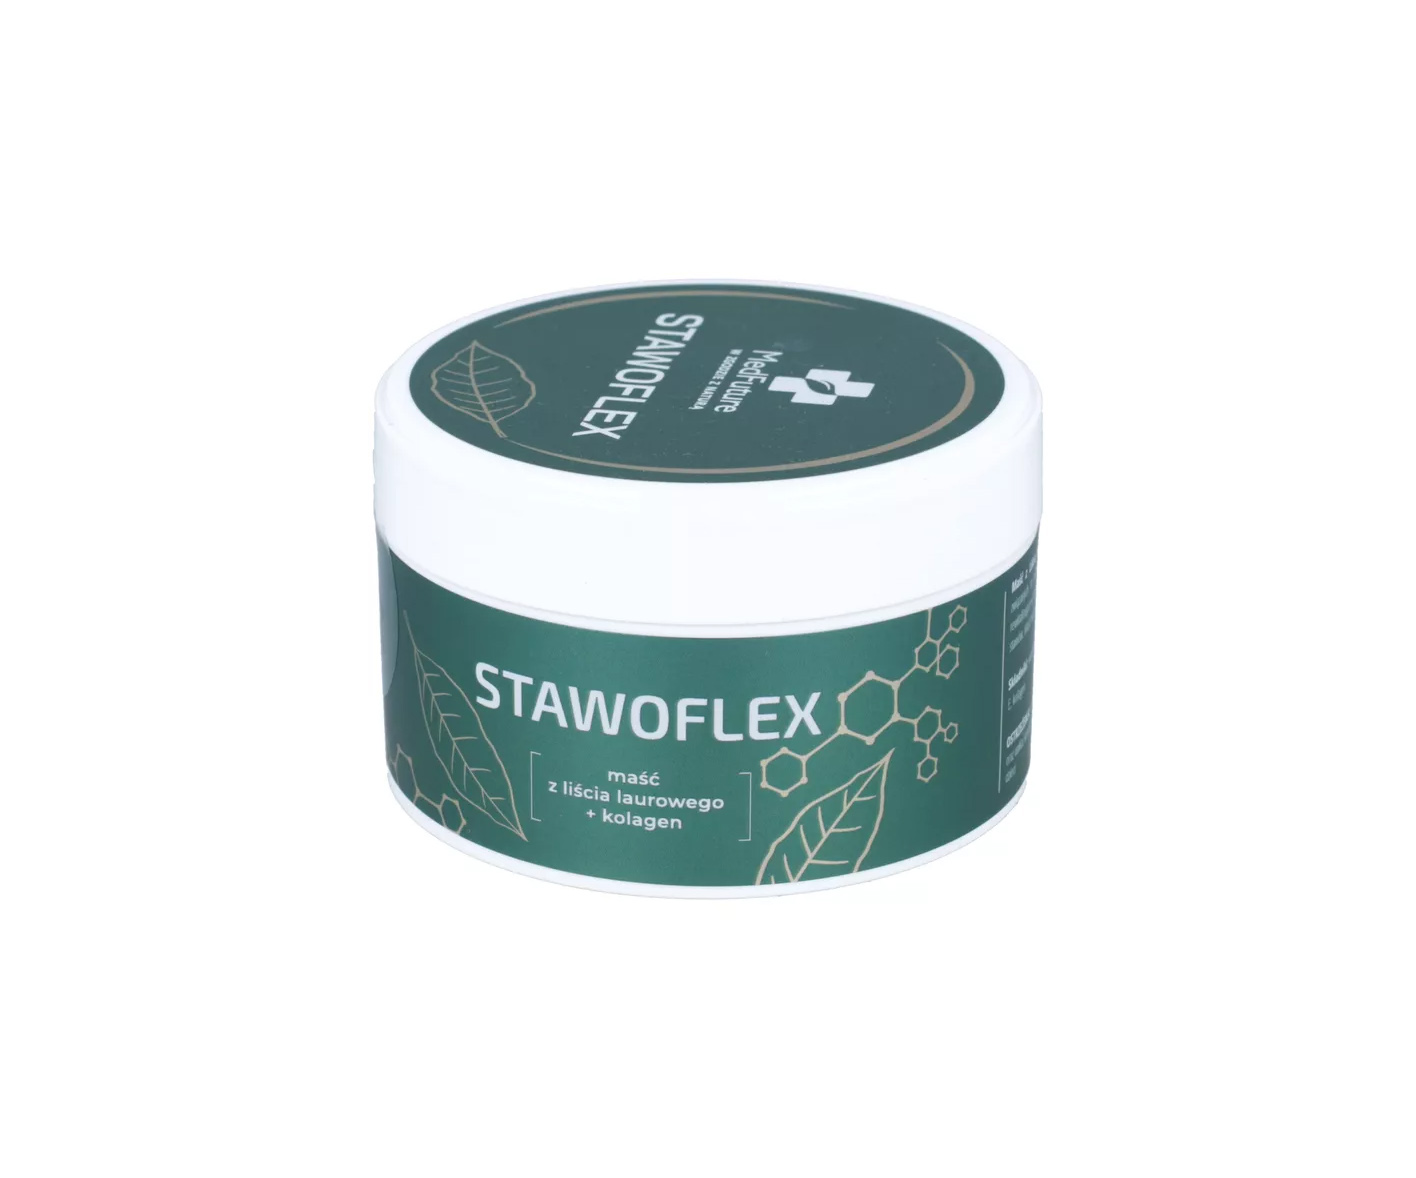 Stawoflex, naturalna maść z liści laurowych